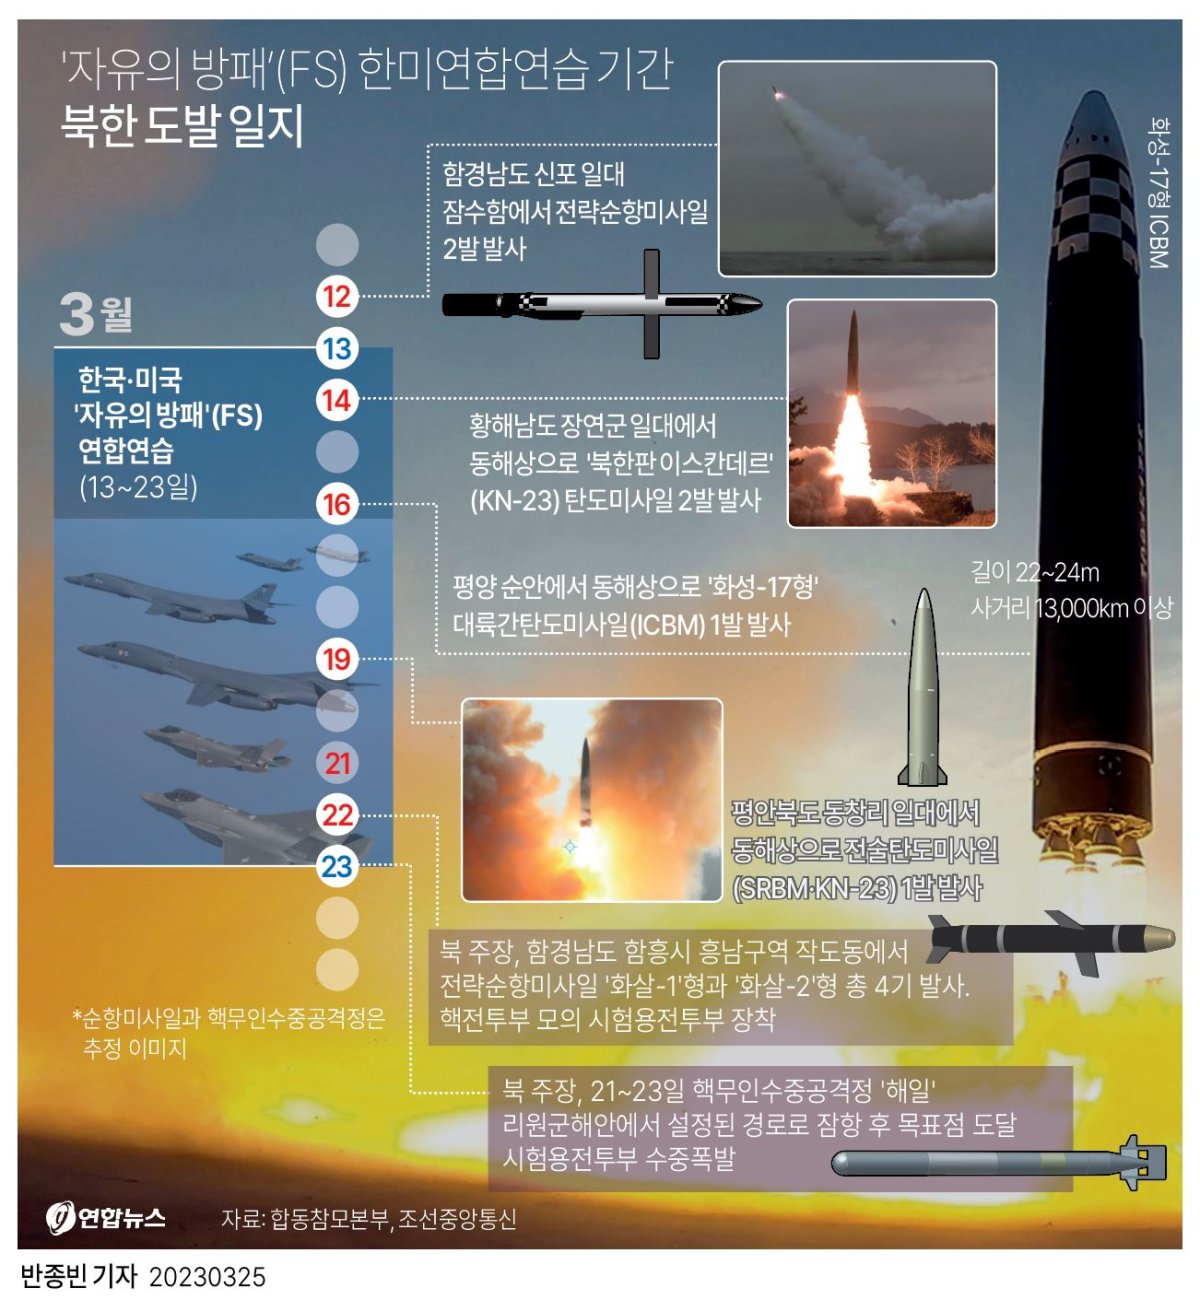  '자유의 방패'(FS) 한미연합연습 기간 북한 도발 일지